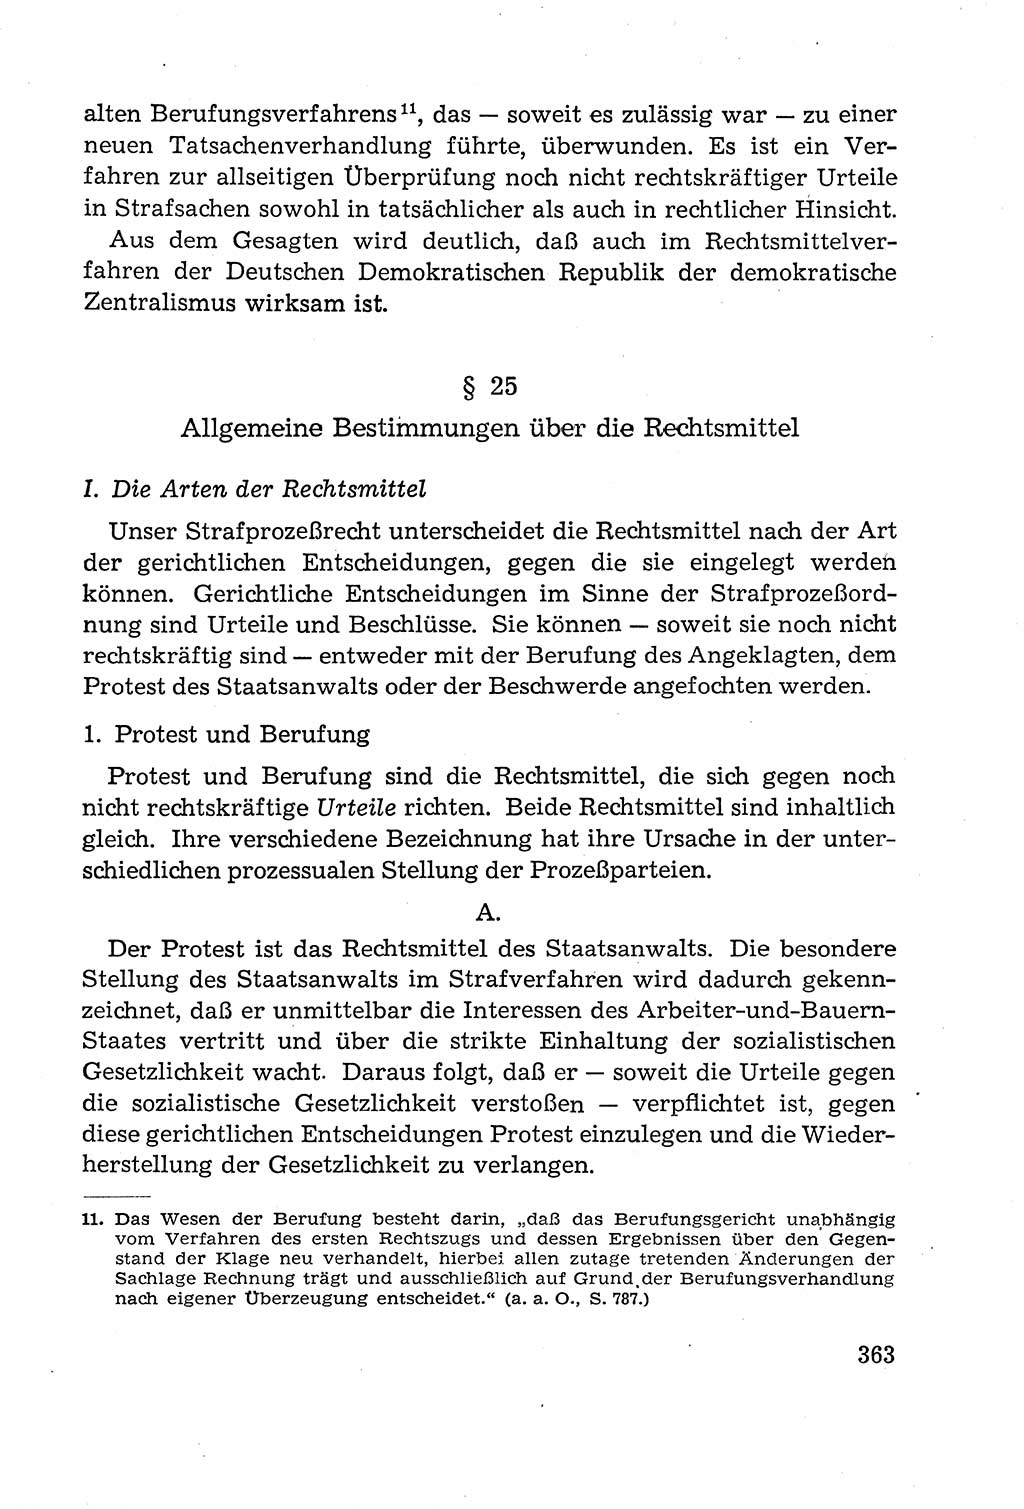 Leitfaden des Strafprozeßrechts der Deutschen Demokratischen Republik (DDR) 1959, Seite 363 (LF StPR DDR 1959, S. 363)